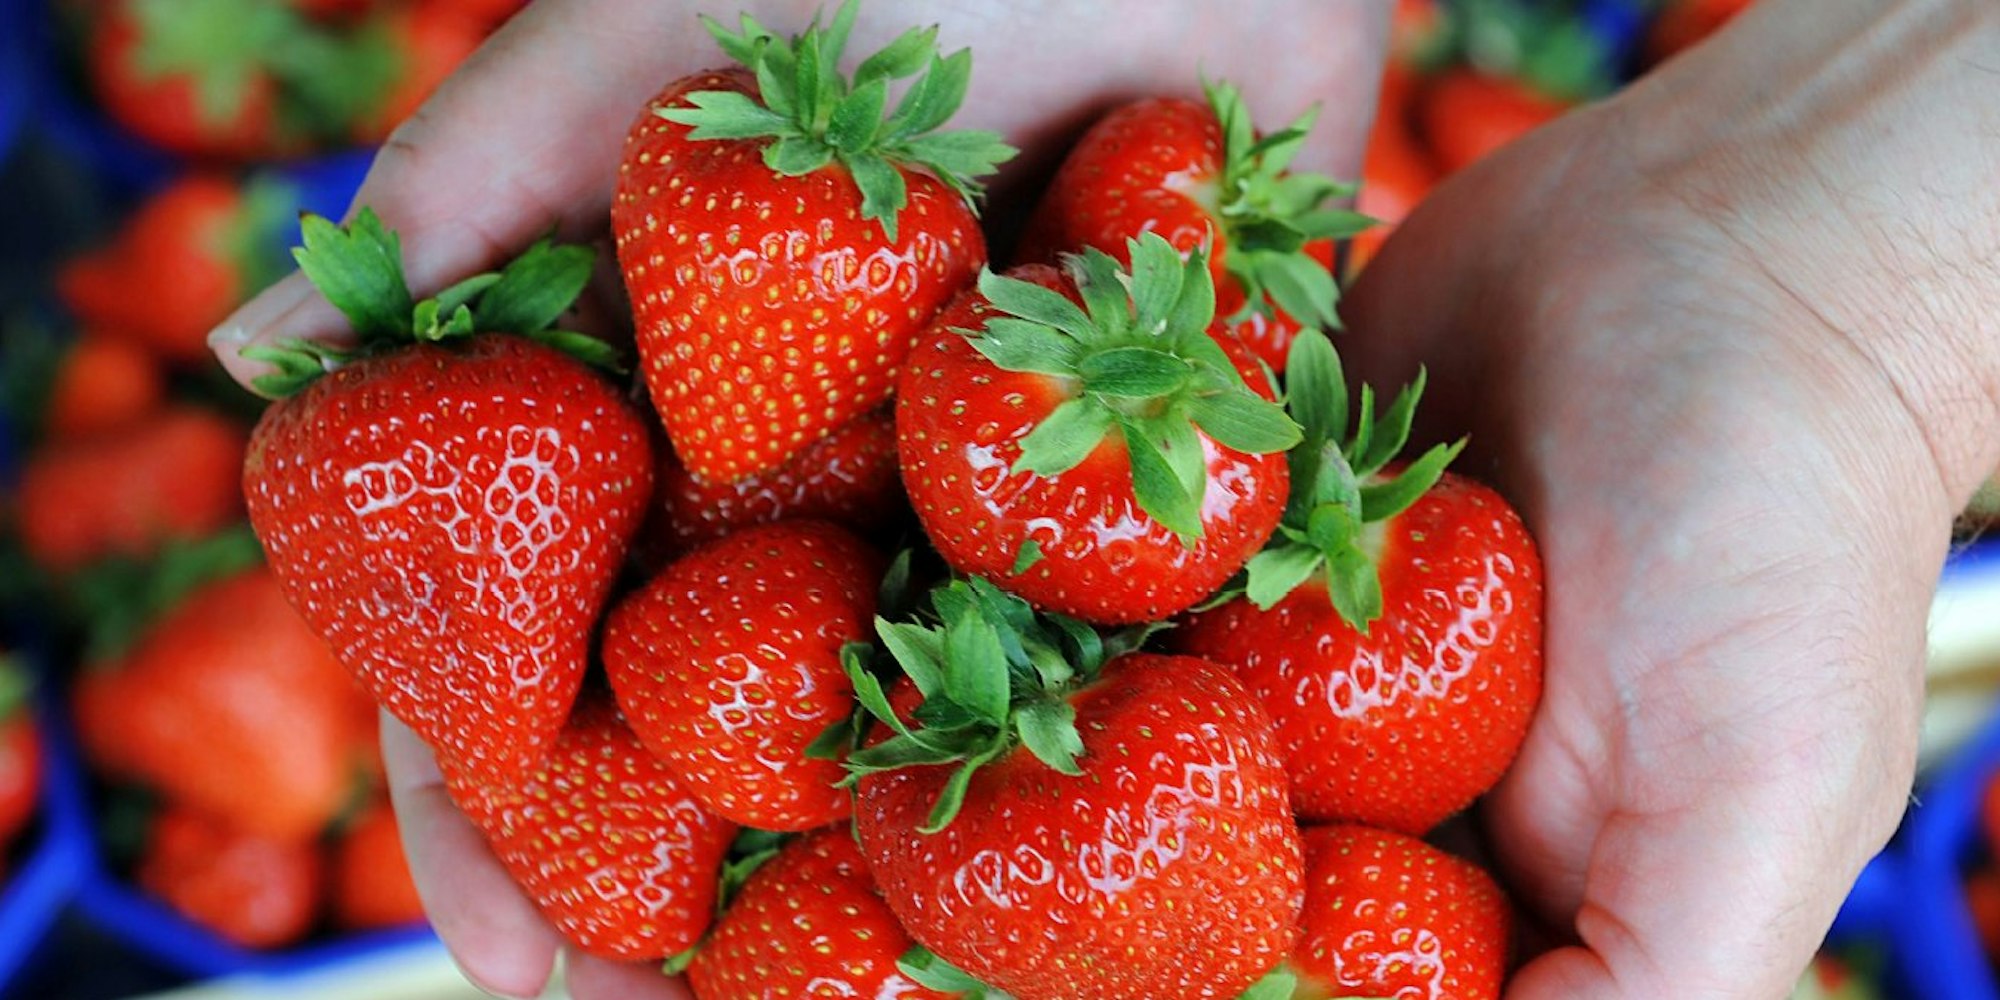 Sie sind lecker, leicht und gesund: Frische Erdbeeren sollte man genießen.